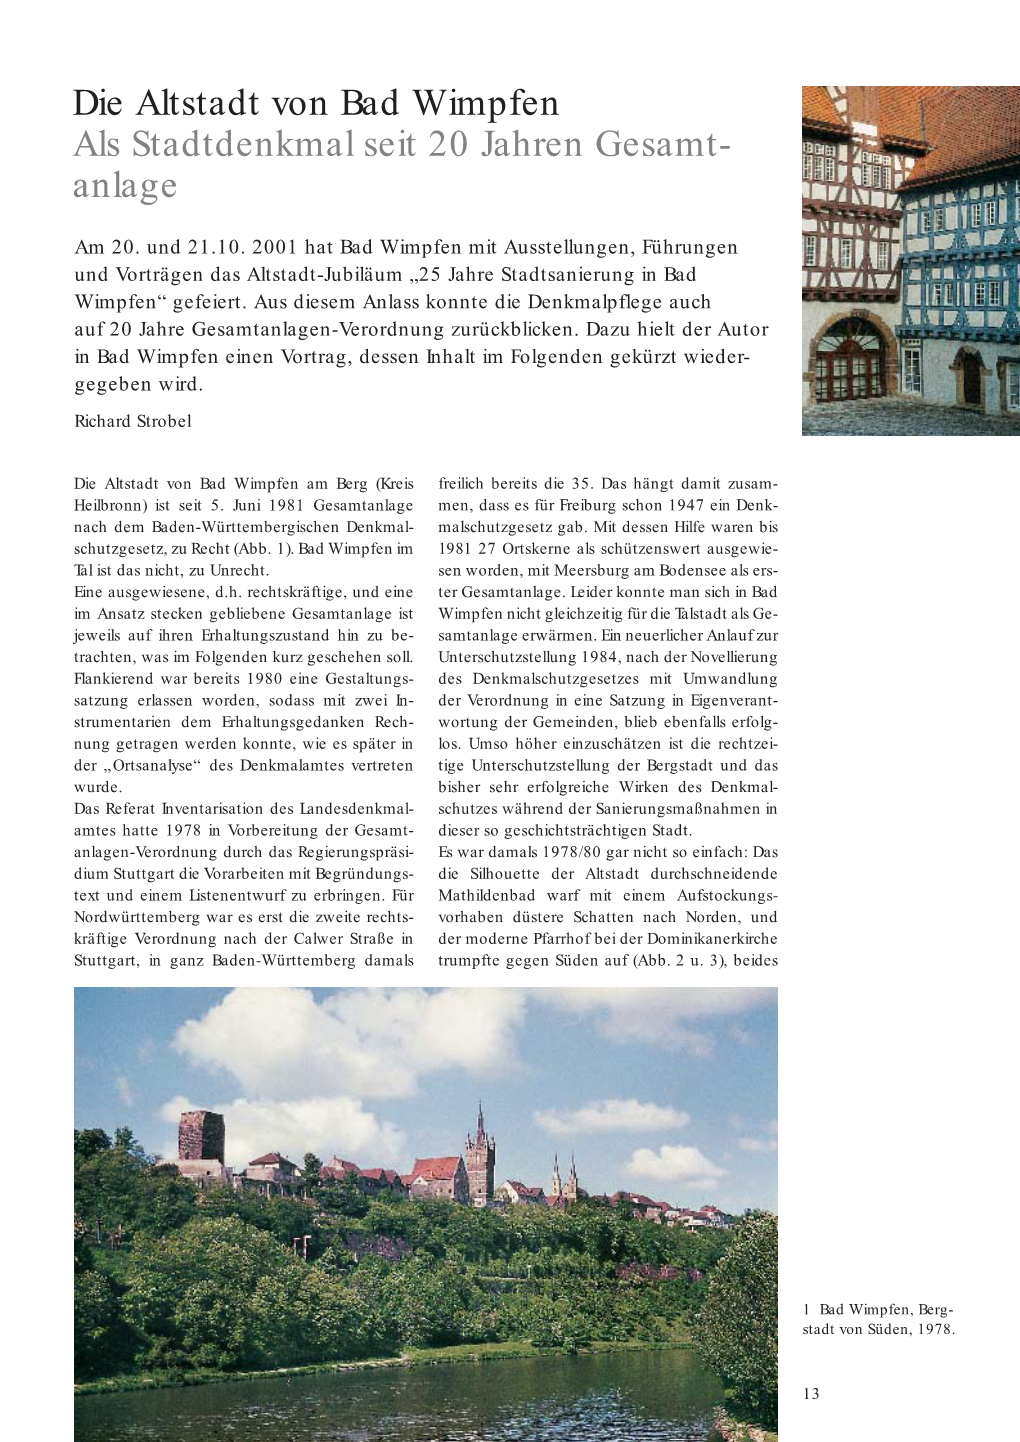 Nachrichtenblatt 1-2002: Editorial